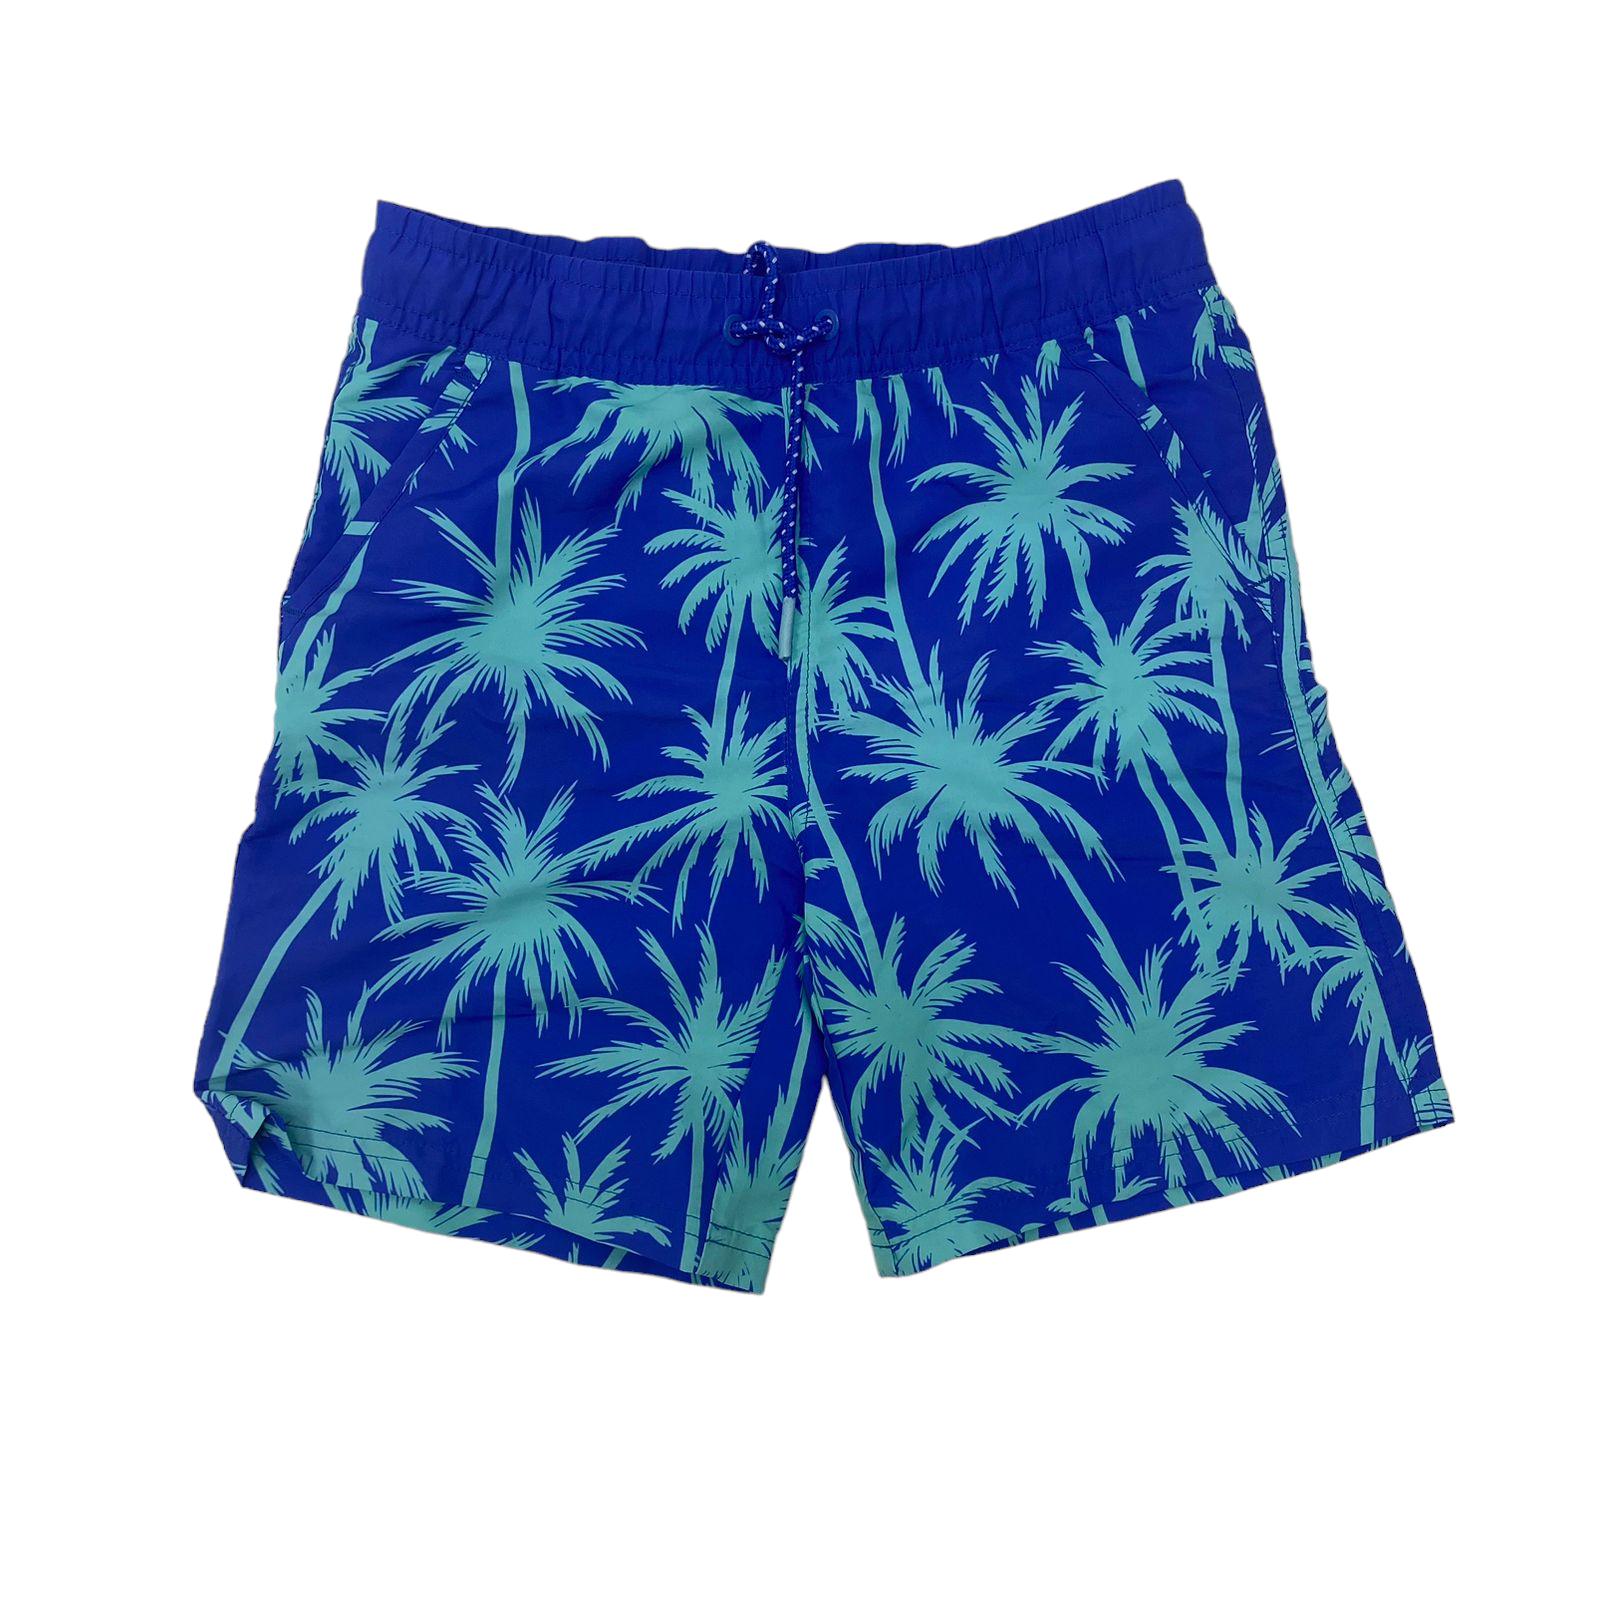 Short azul con palmeras celeste y cordones